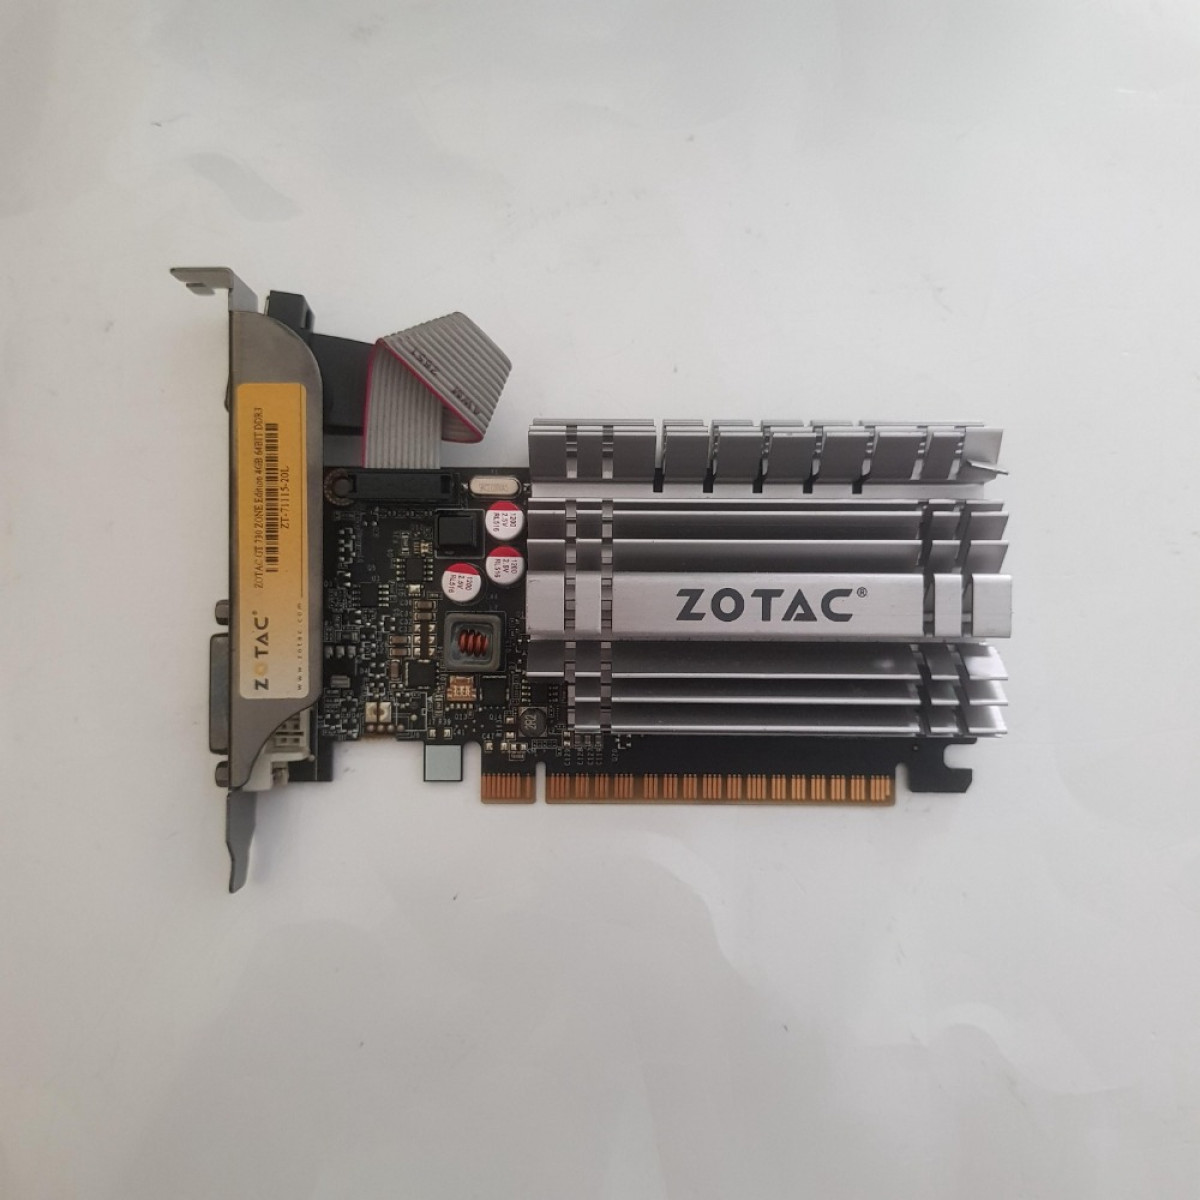 ZOTAC GeForce GT 730 GT730 4GB GDDR3 64 Bit